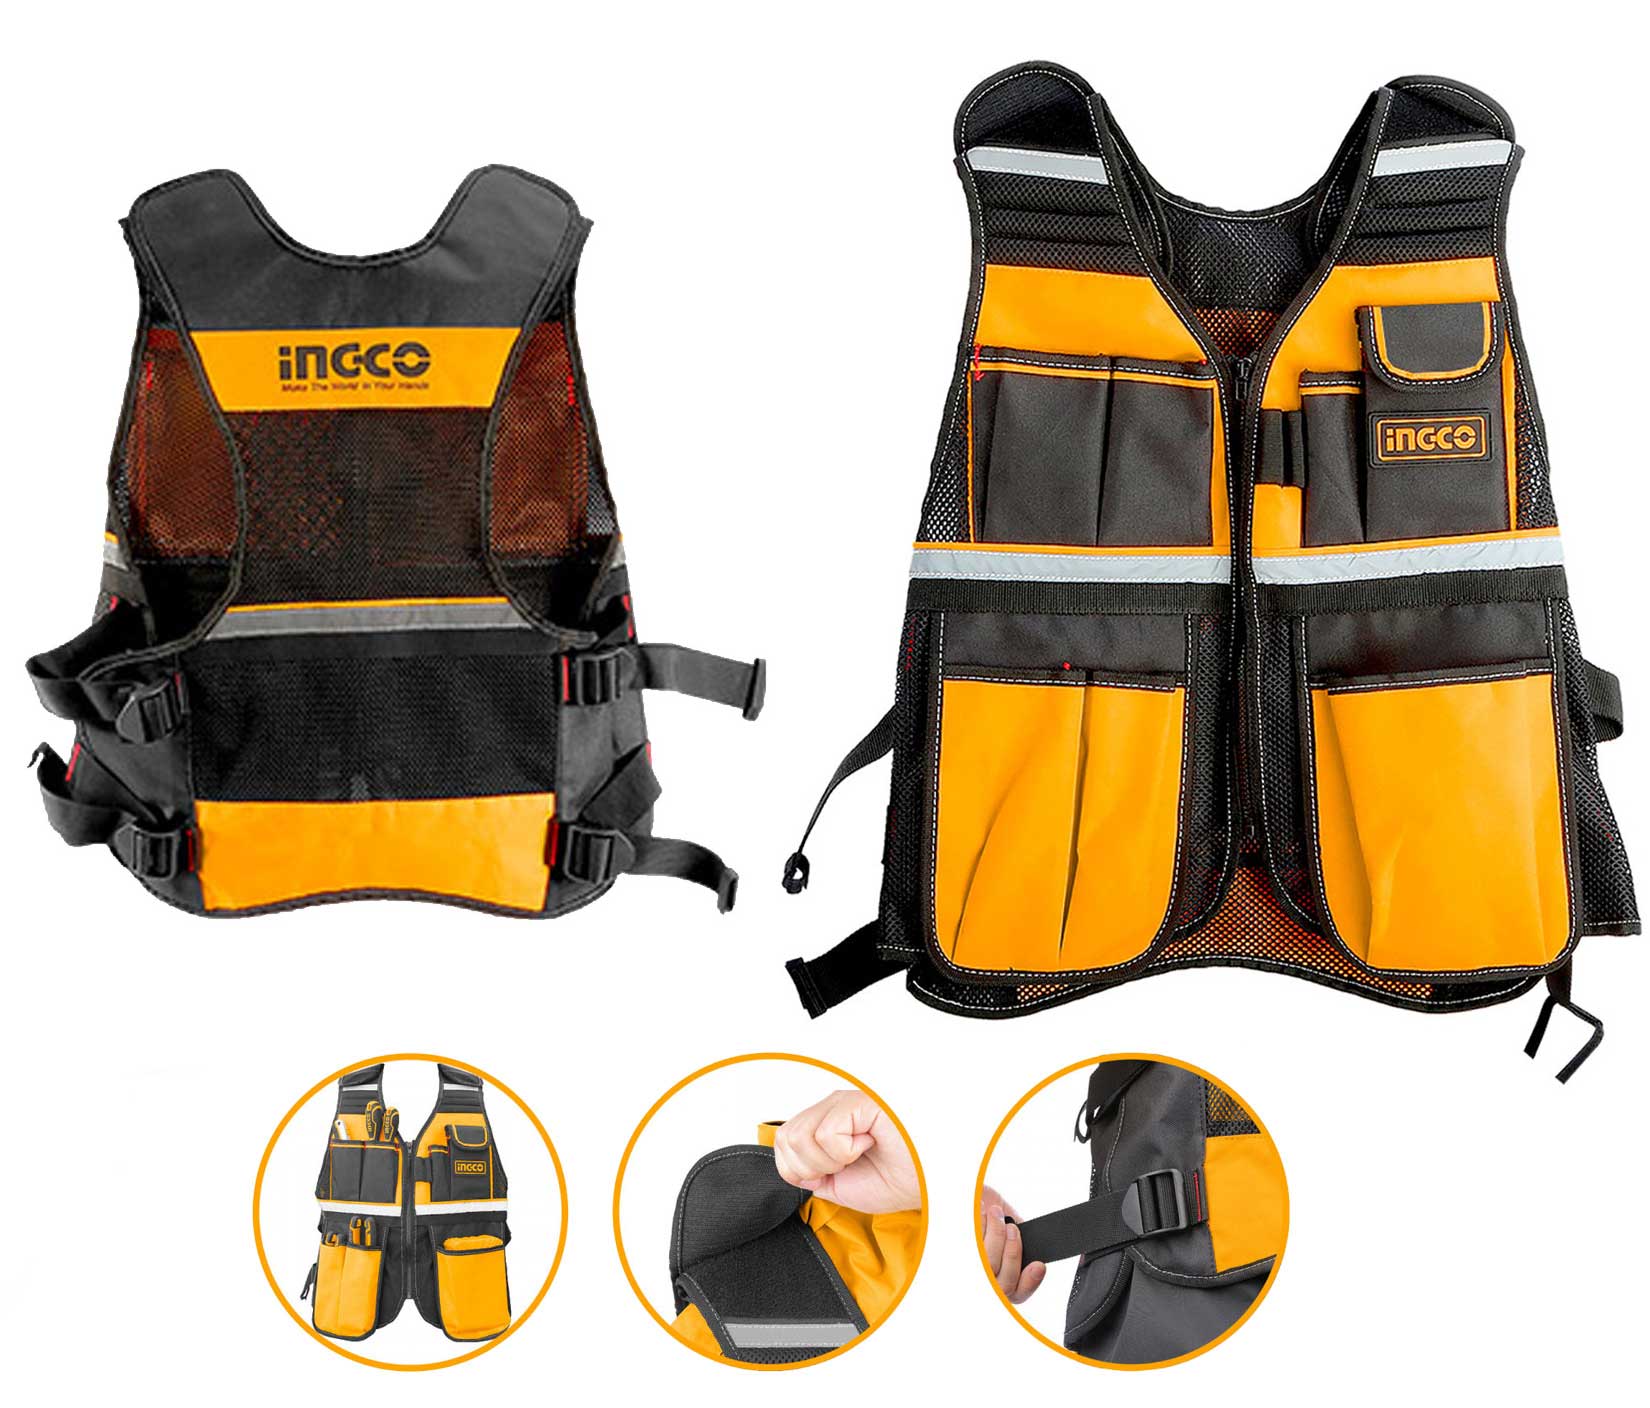 Ingco HTVT0901 Tool Vest - Buy Here - Allschoolabs Online Shopping